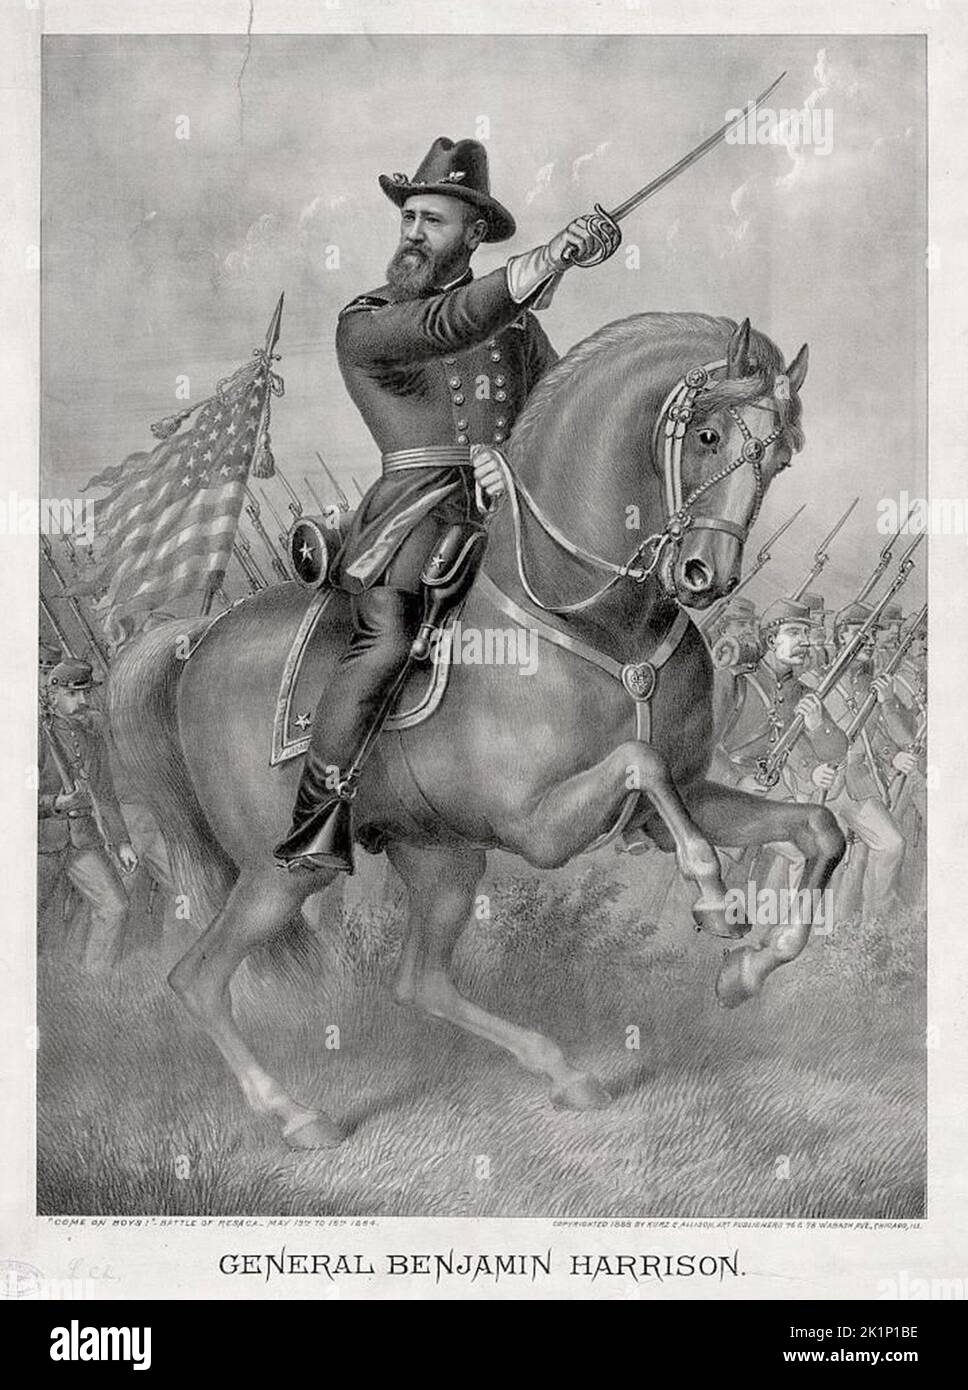 Ein Stich von Präsident Benjamin Harrison während der Schlacht von Resaca, die die Indiana 70. im Mai 1864 führte. Harrison war 31 Jahre alt und ein Oberst zu der Zeit. Stockfoto